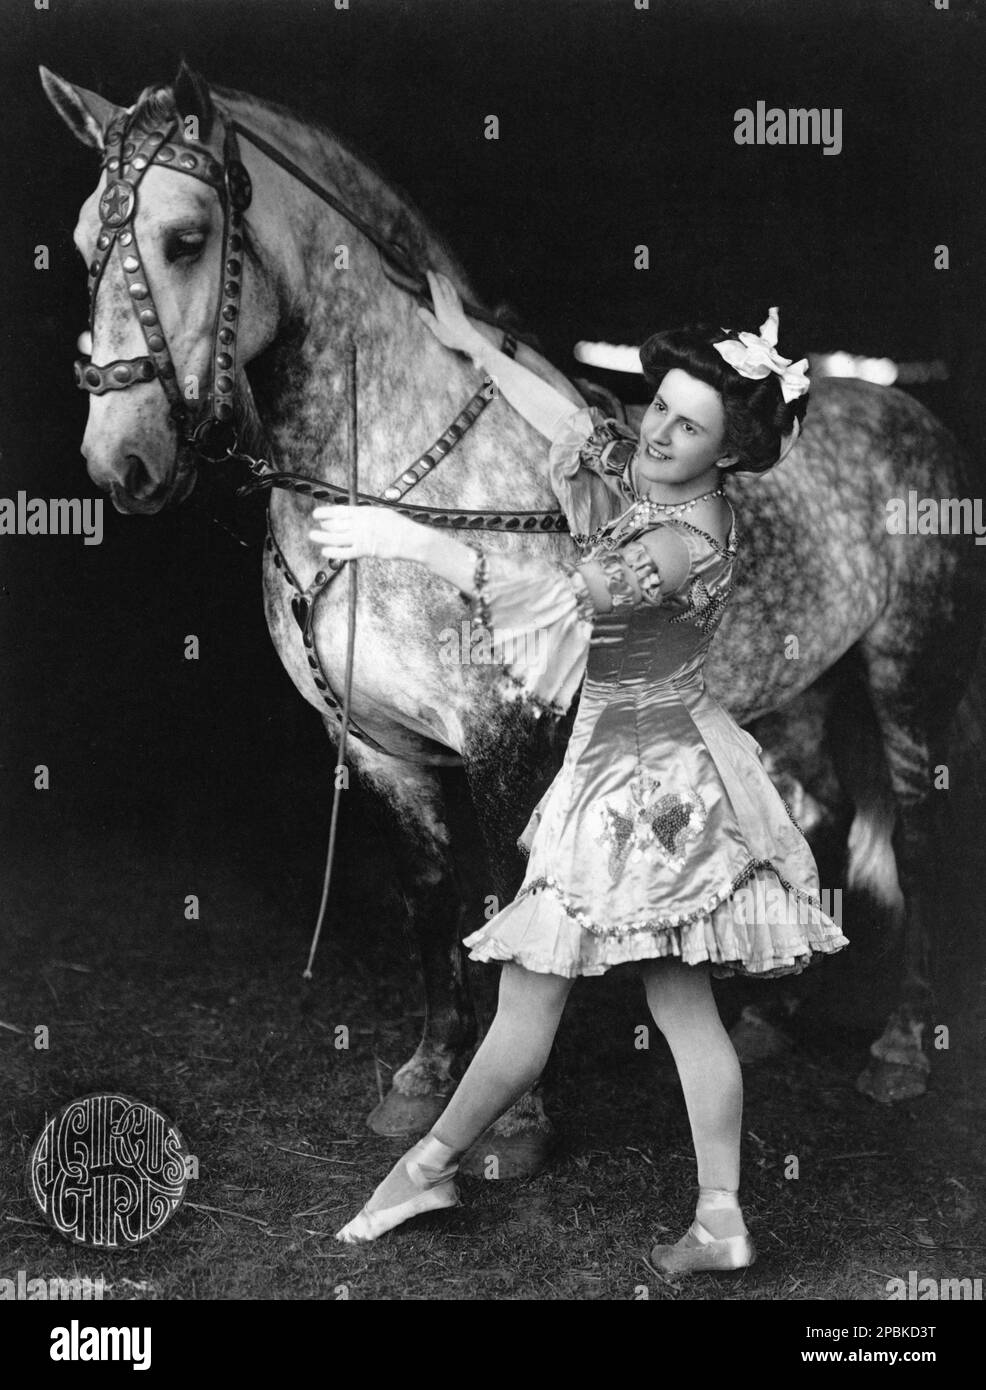 1908 , USA : A Circus girl with horse .  Photo by F. W. Glasier, Brockton, Mass. - CAVALLO - CAVALLI  - domatore - domatrice equestre - CIRCO - CIRCUS - MUSIC HALL - MUSICALL - CABARET - VAUDEVILLE - WOMAN - DONNA -   HISTORY - FOTO STORICA - smile - sorriso - frustino - wimp - CAVALLERIZZA - gloves - guanti - raso - satin - farfalla - papillon embroderie  ----  Archivio GBB Stock Photo